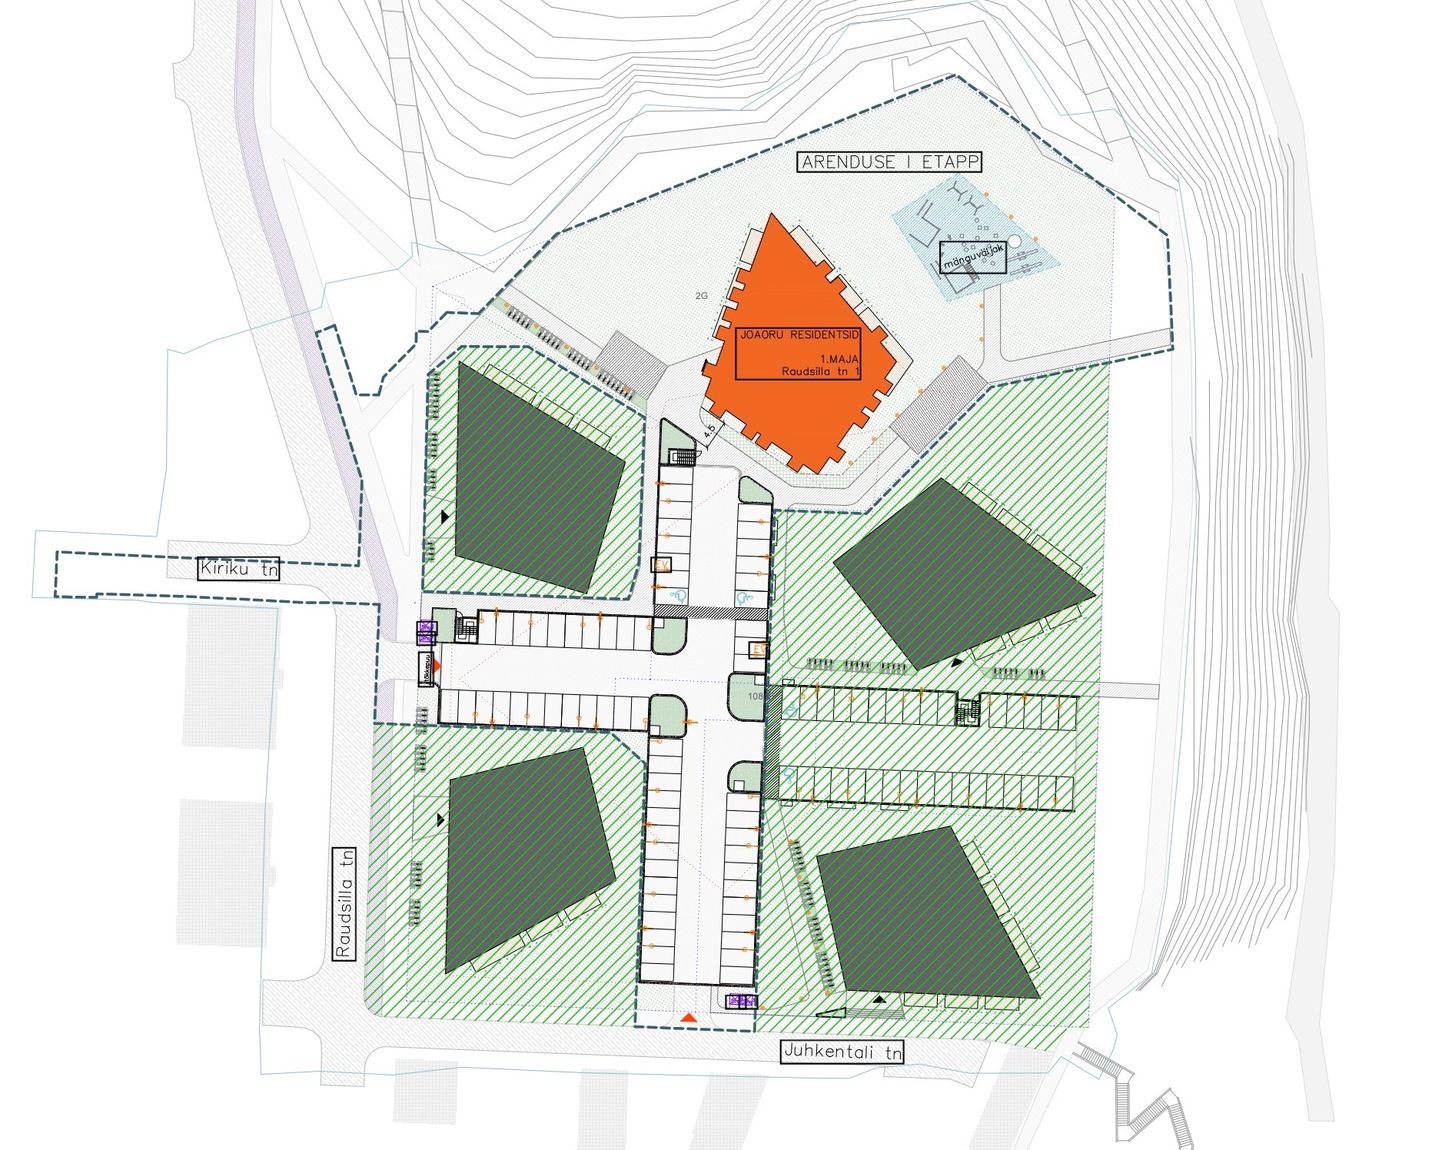 План будущего квартала "Joaoru Residentsid", где главными объектами станут пять квартирных домов оригинальной конфигурации. Оранжевым цветом на плане выделено здание, строительство которого ведется прямо сейчас.